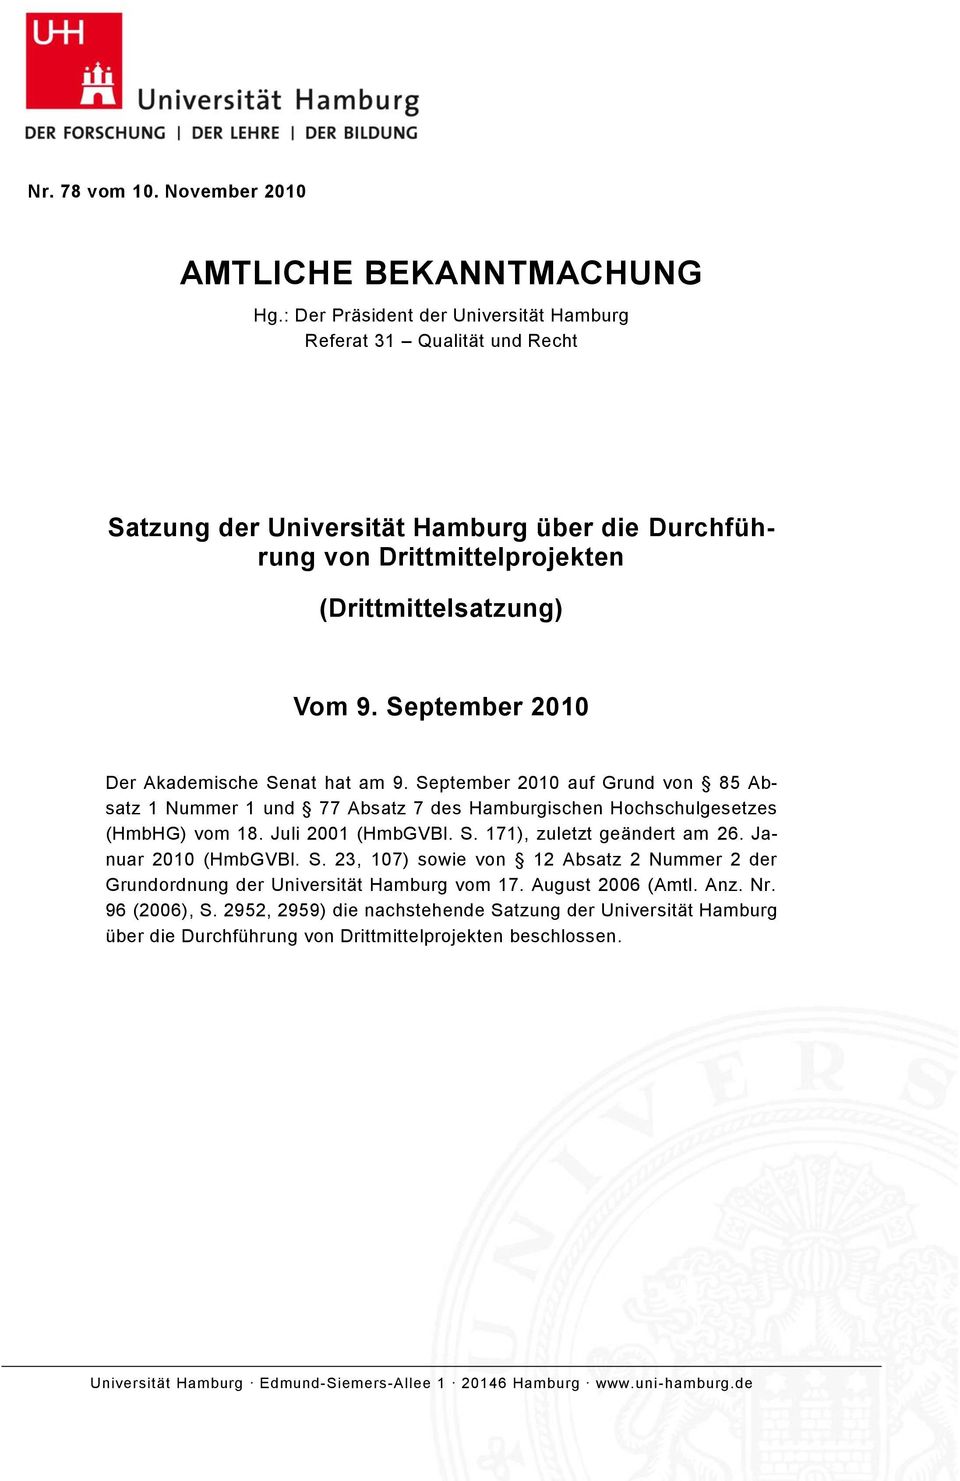 September 2010 Der Akademische Senat hat am 9. September 2010 auf Grund von 85 Absatz 1 Nummer 1 und 77 Absatz 7 des Hamburgischen Hochschulgesetzes (HmbHG) vom 18. Juli 2001 (HmbGVBl. S. 171), zuletzt geändert am 26.